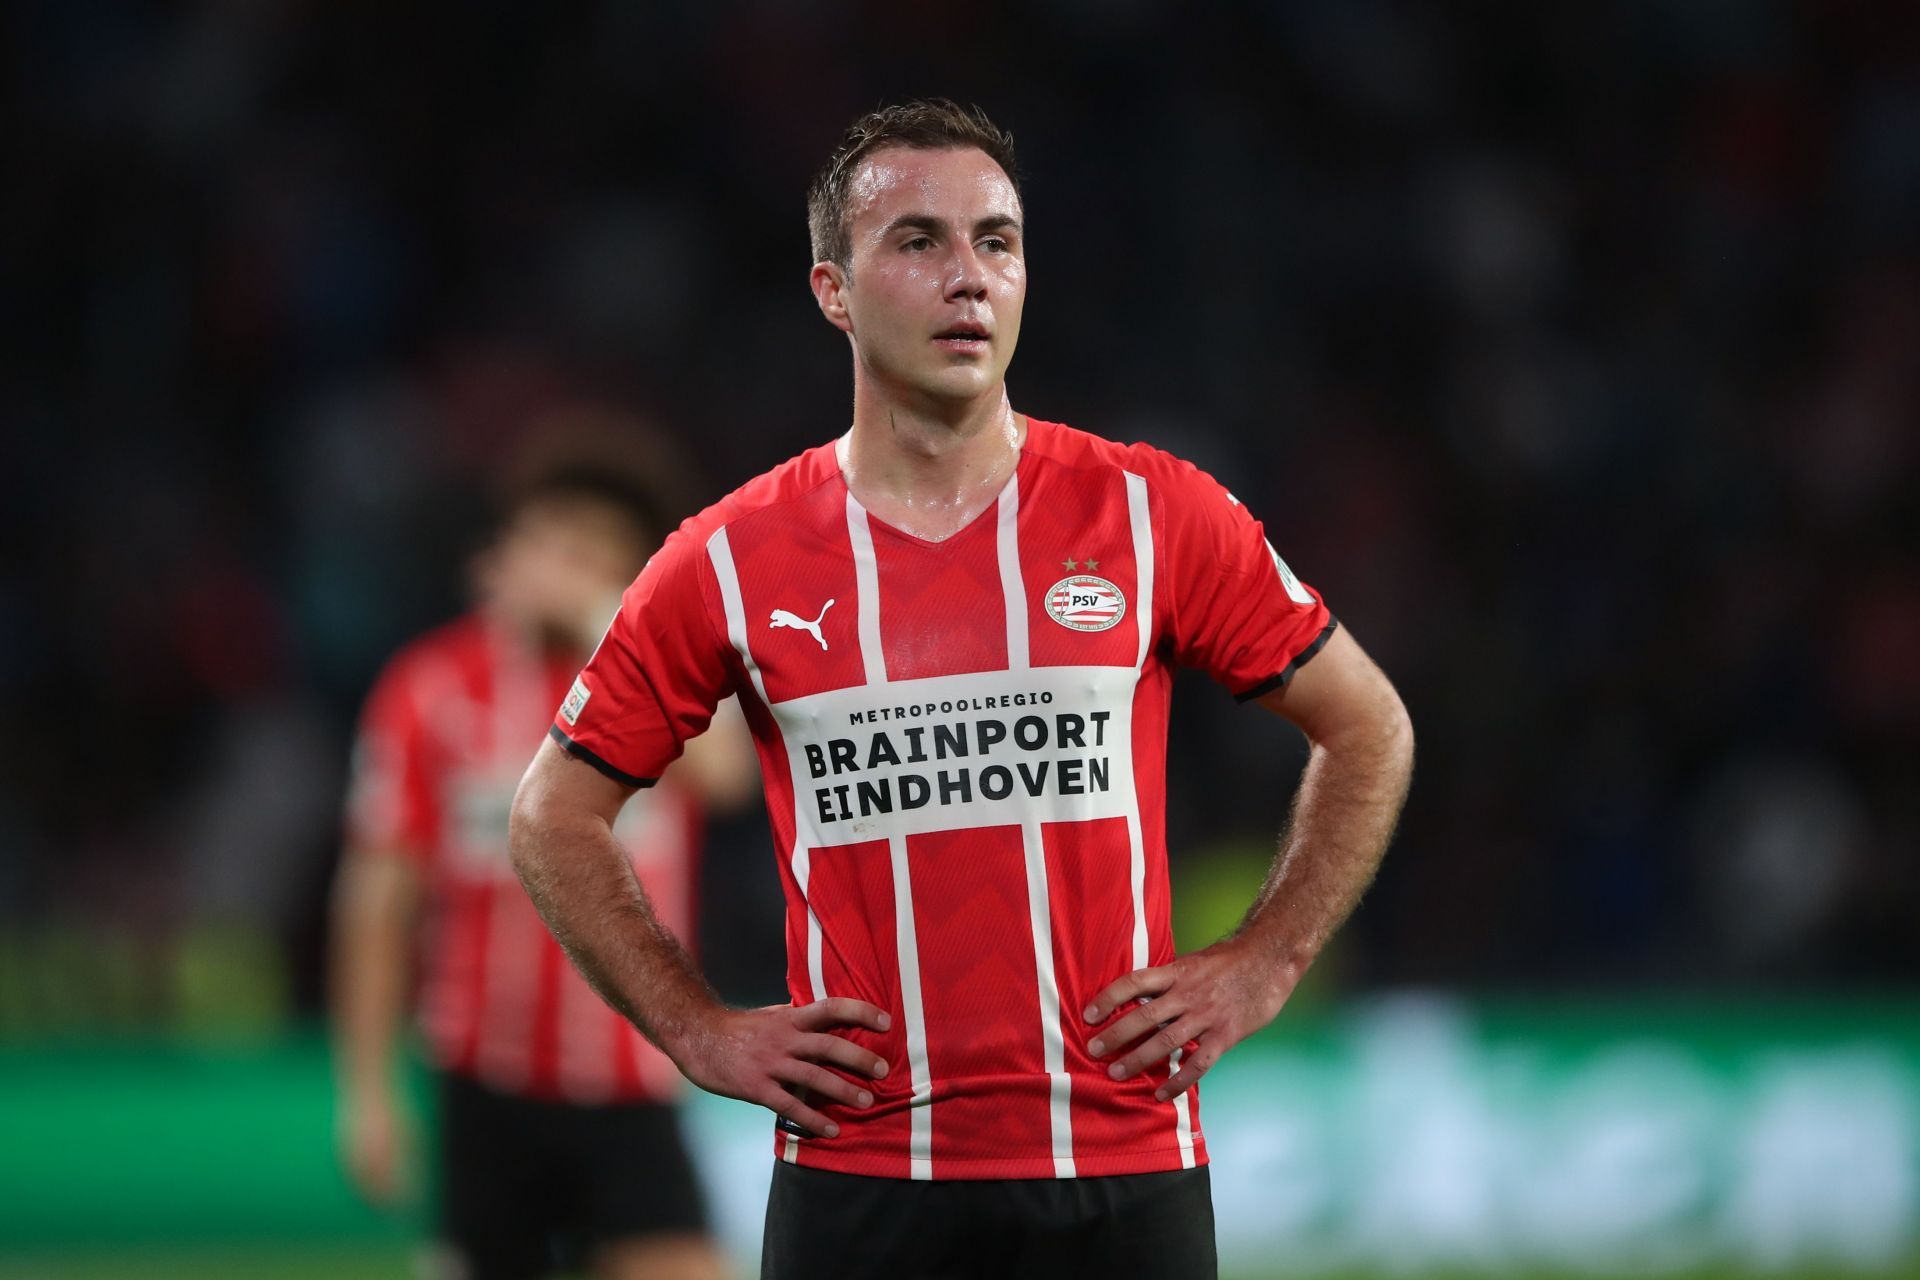 PSV Eindhoven will face Waalwijk on Sunday - Eredivisie